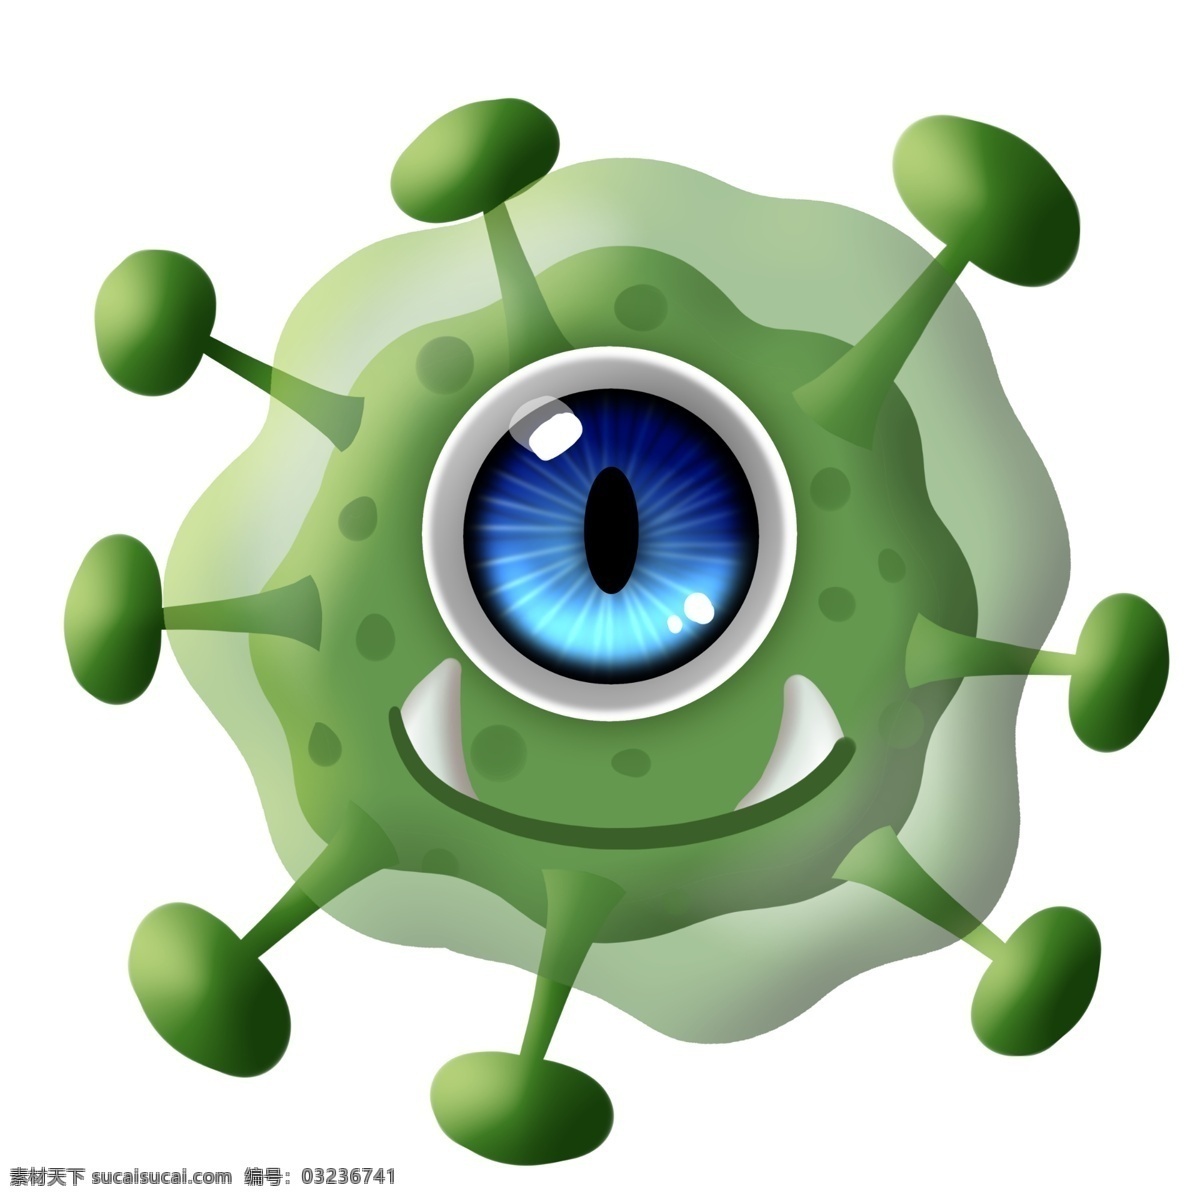 蓝 眼睛 绿色 病毒 细菌 卡通 大眼睛 独眼 生物 害怕 斑点 恶魔 尖牙 冷笑 疾病 生病 菌体 菌状 细胞